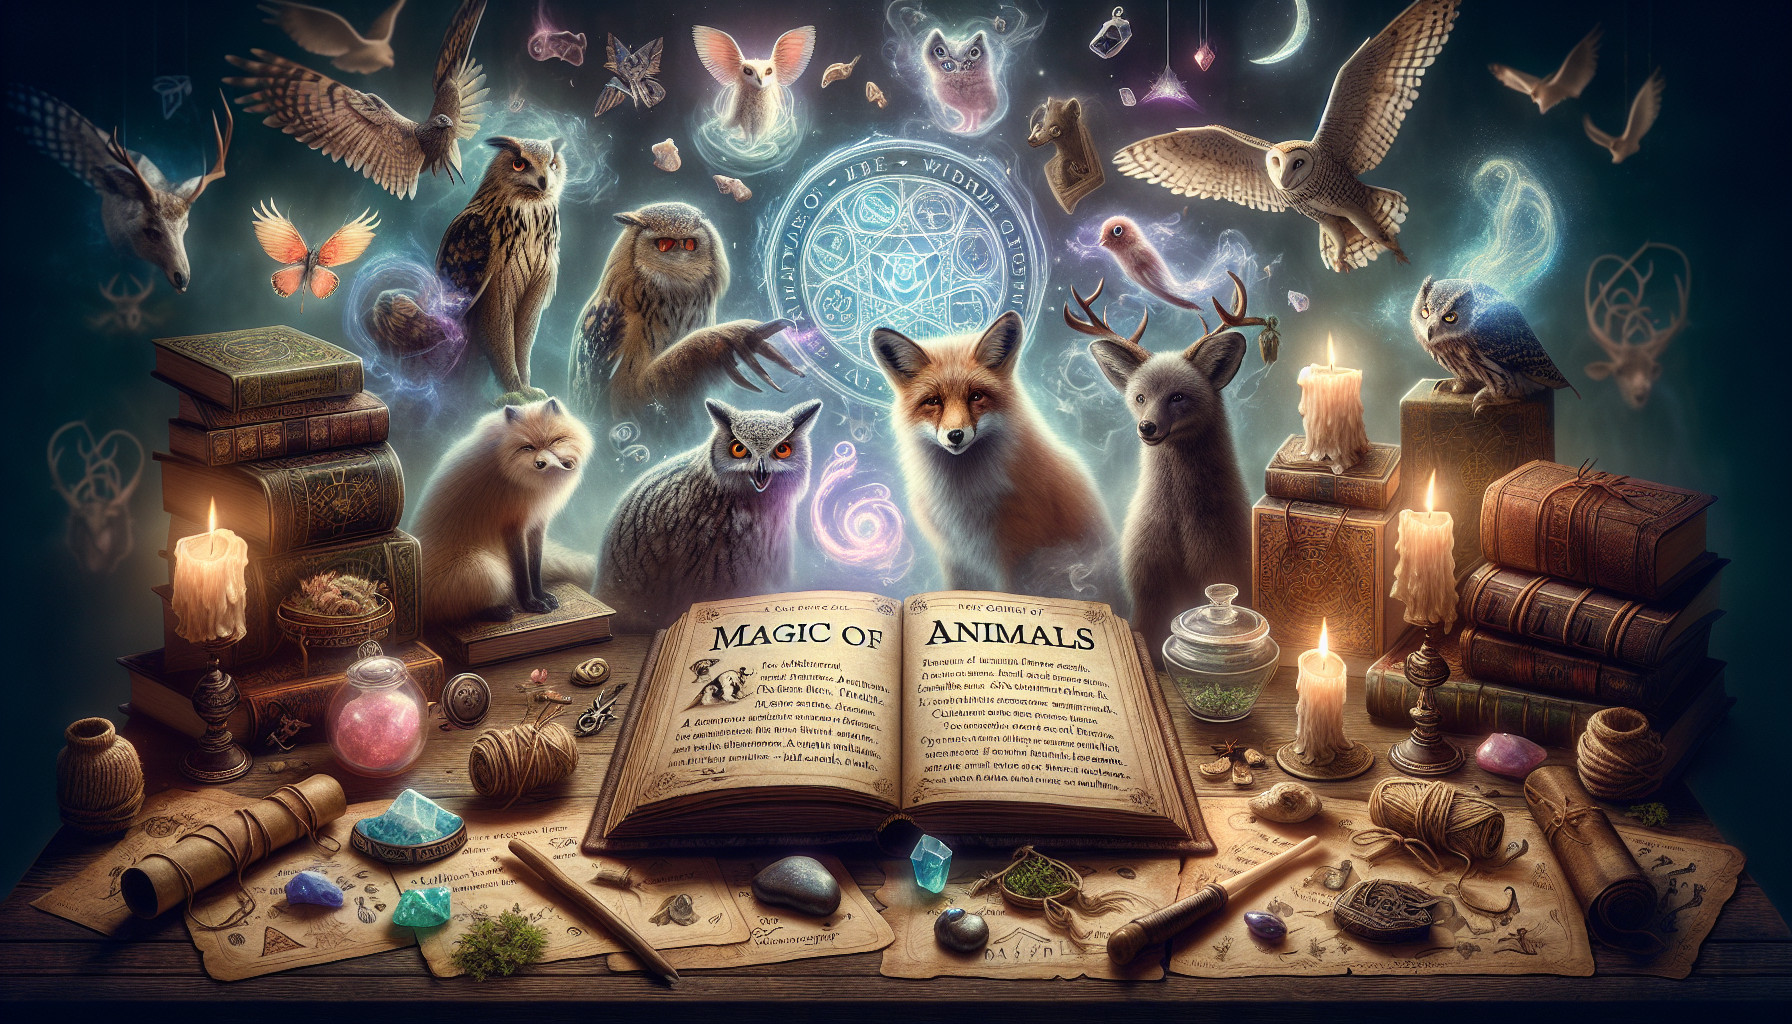 Magia De Los Animales: Incorporando La Sabiduría Animal En Hechizos